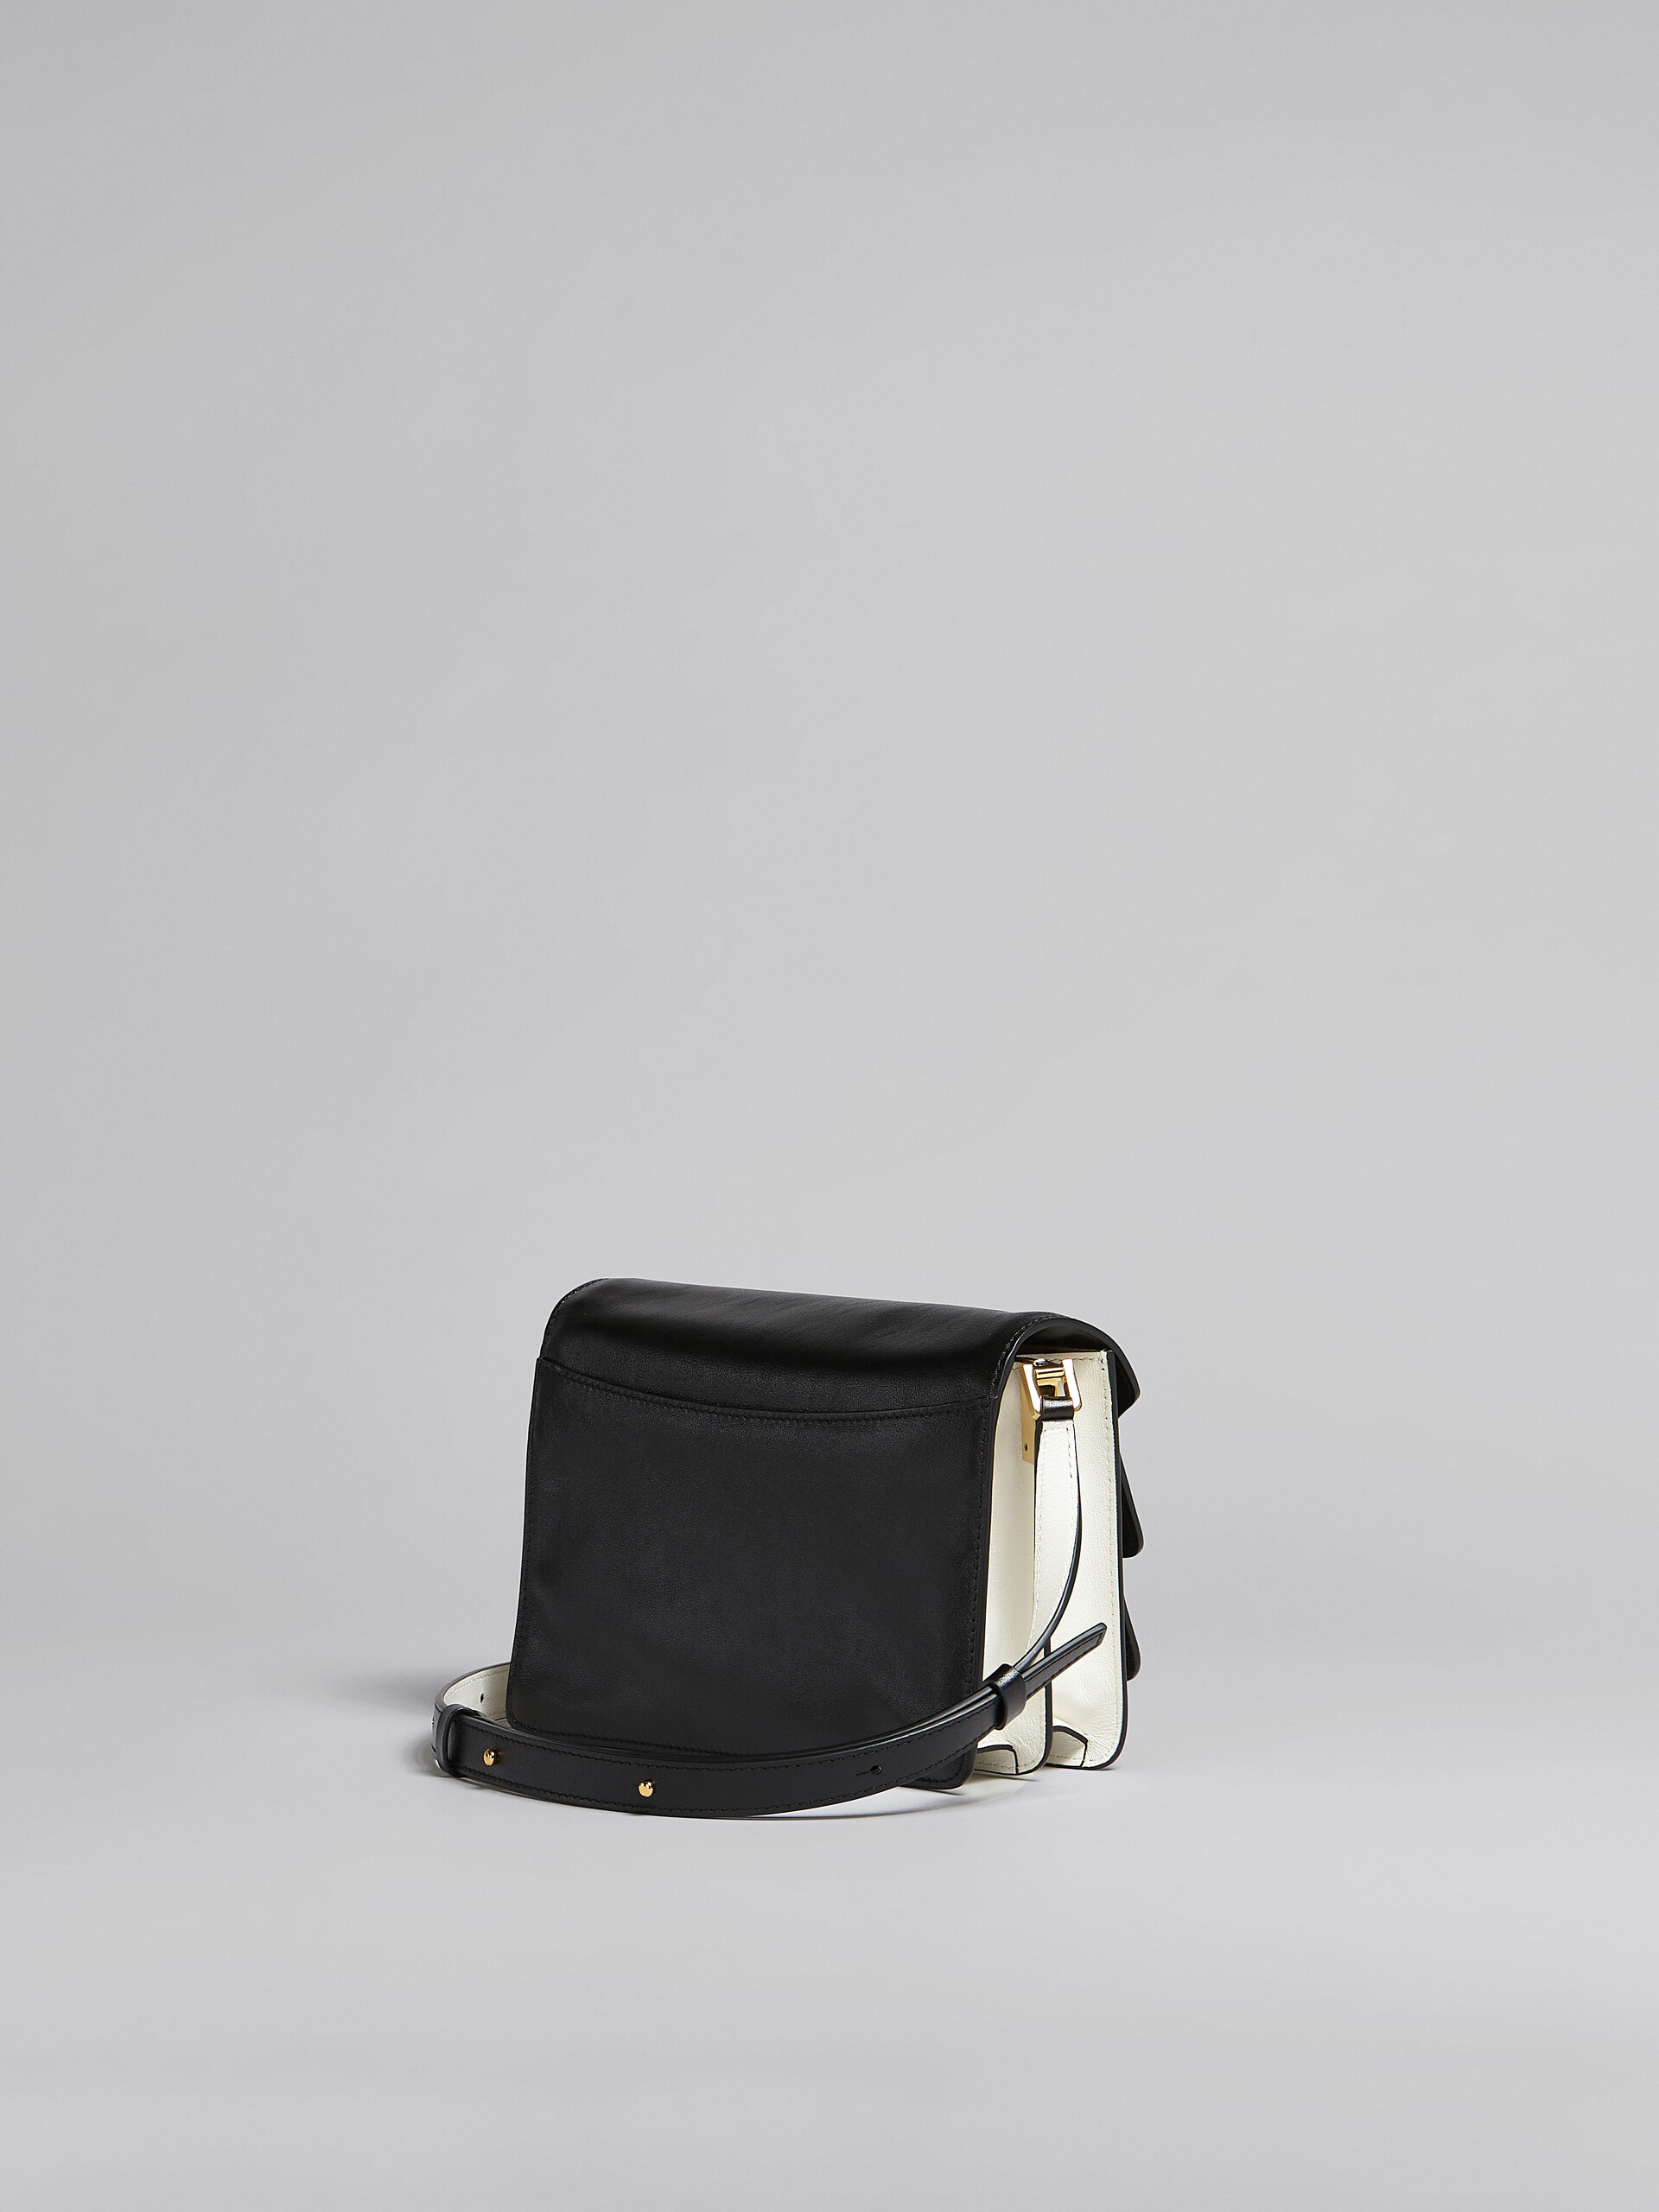 Trunk Soft Medium Bag in black and white leather - Shoulder Bag - Image 3